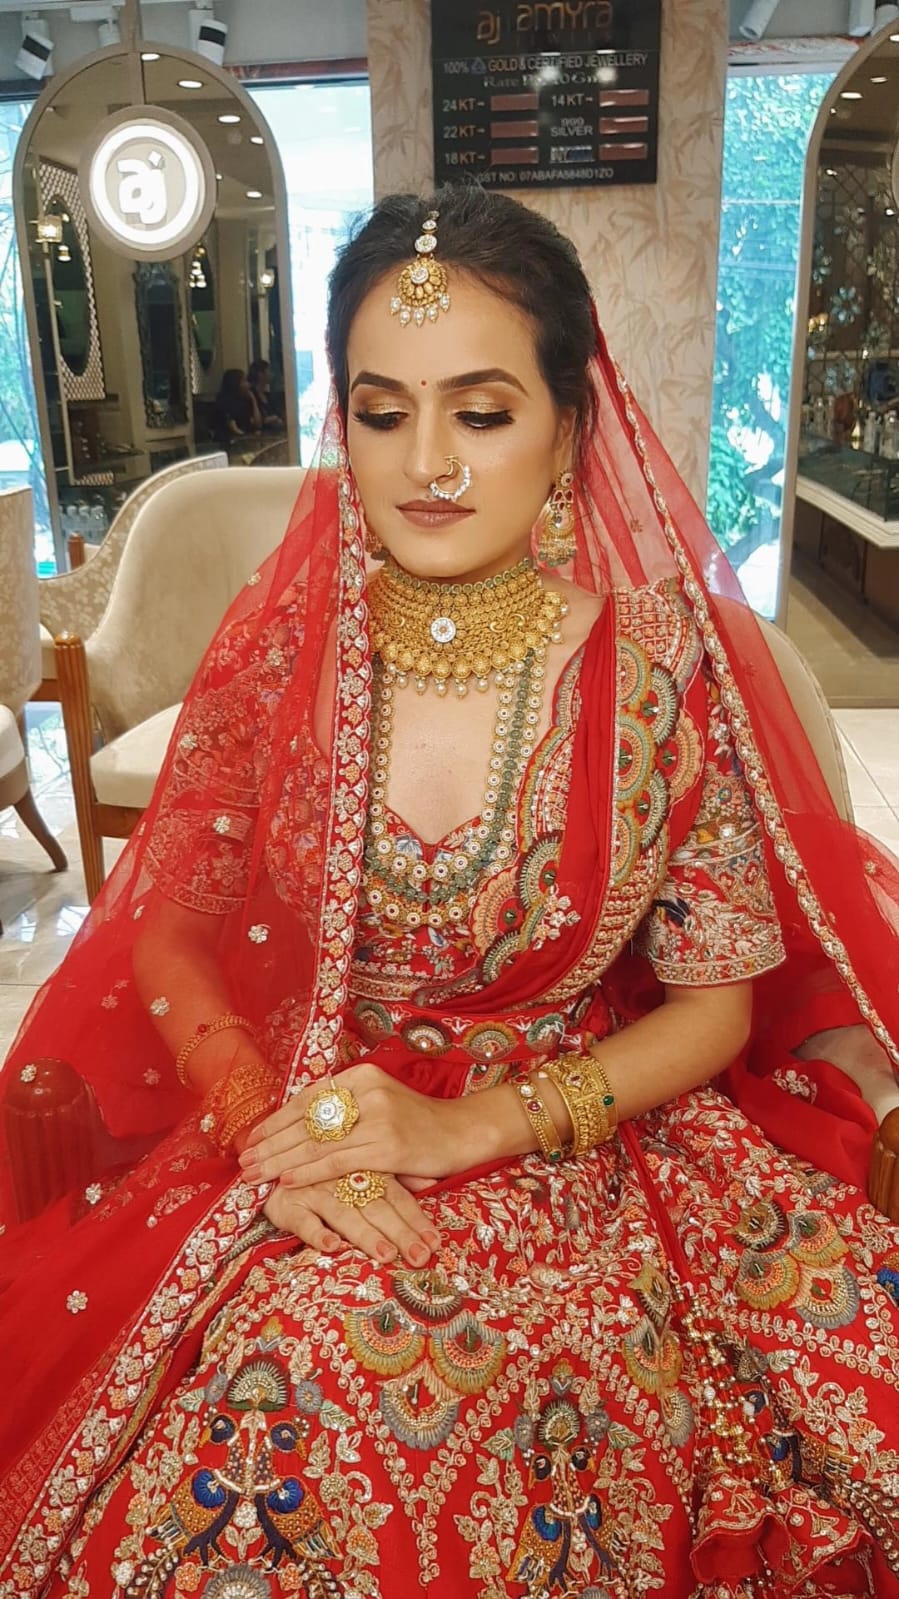 seema-vij-makeup-artist-delhi-ncr